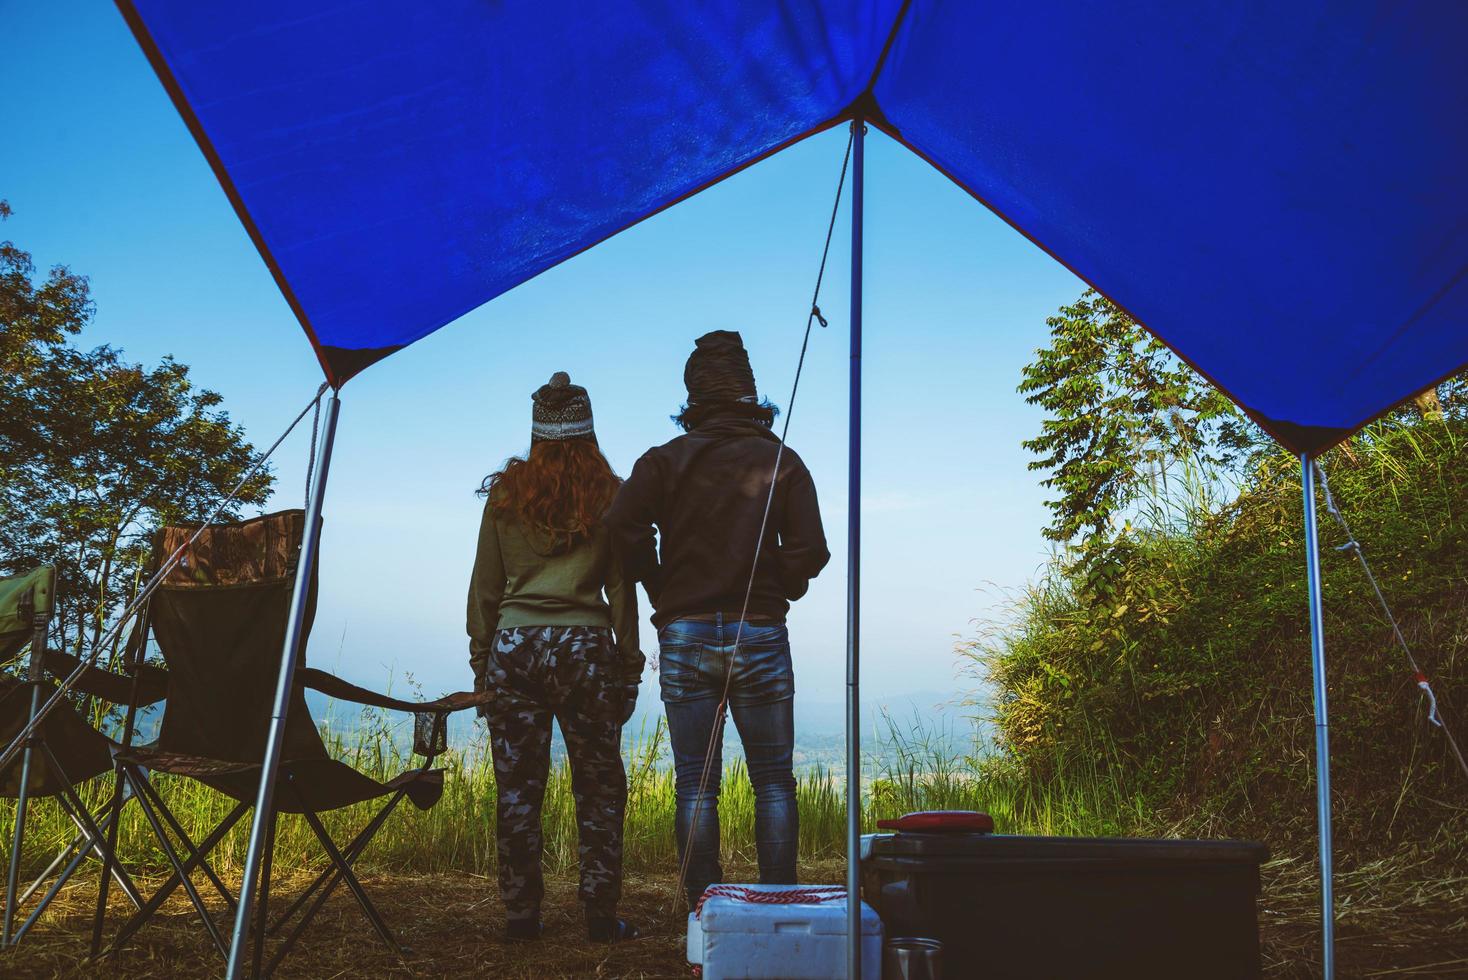 Pärchen reisen Camping Zelt in den Urlaub. Flitterwochenpaare reisen glücklich und genießen eine wunderschöne Natur auf dem Gipfel des nebligen Berges. foto